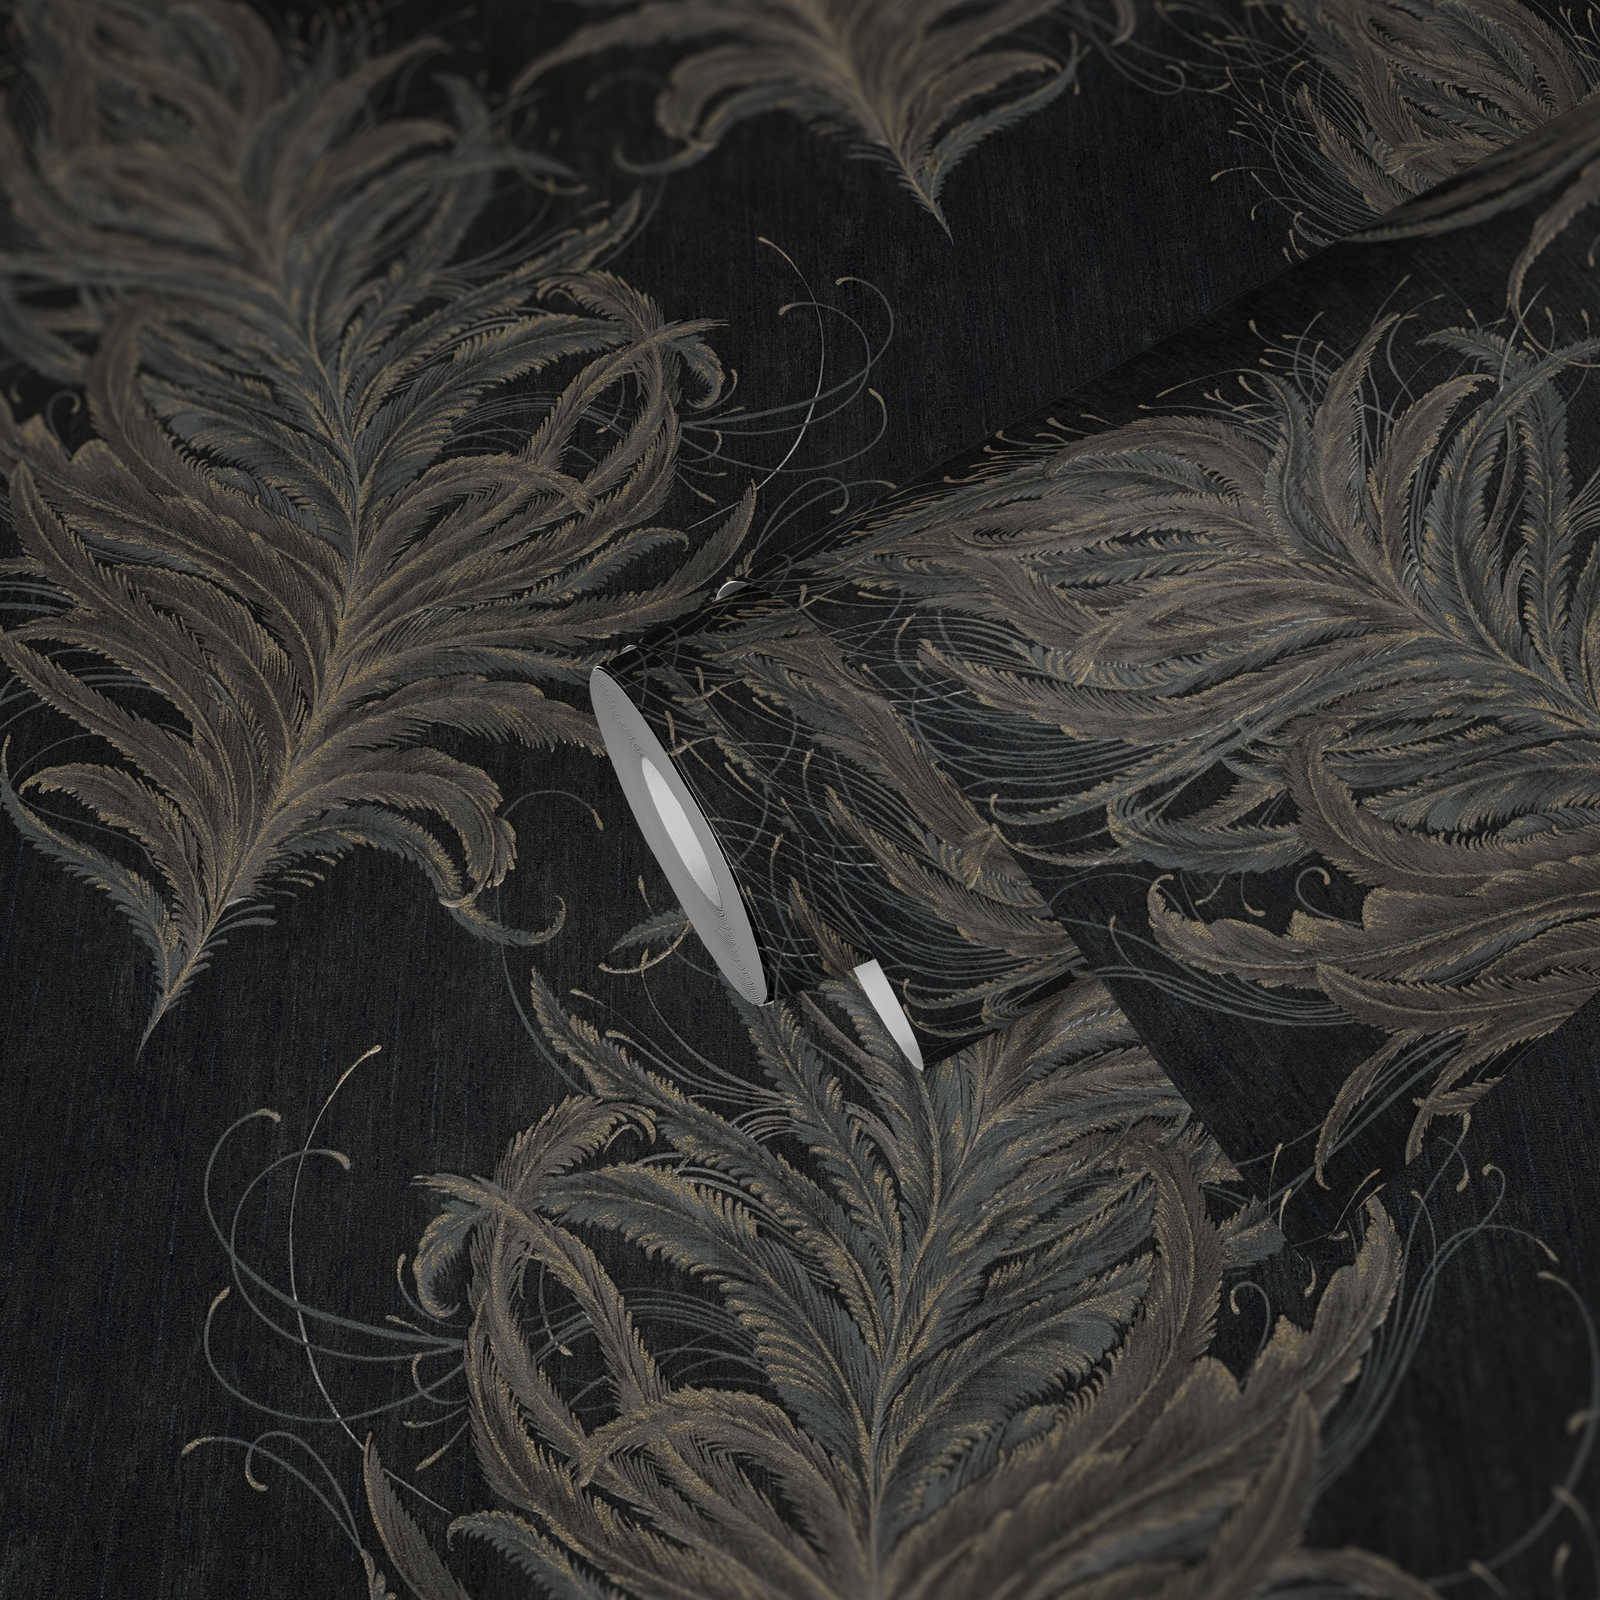             Zwart vliesbehang met veren in metallic kleuren
        